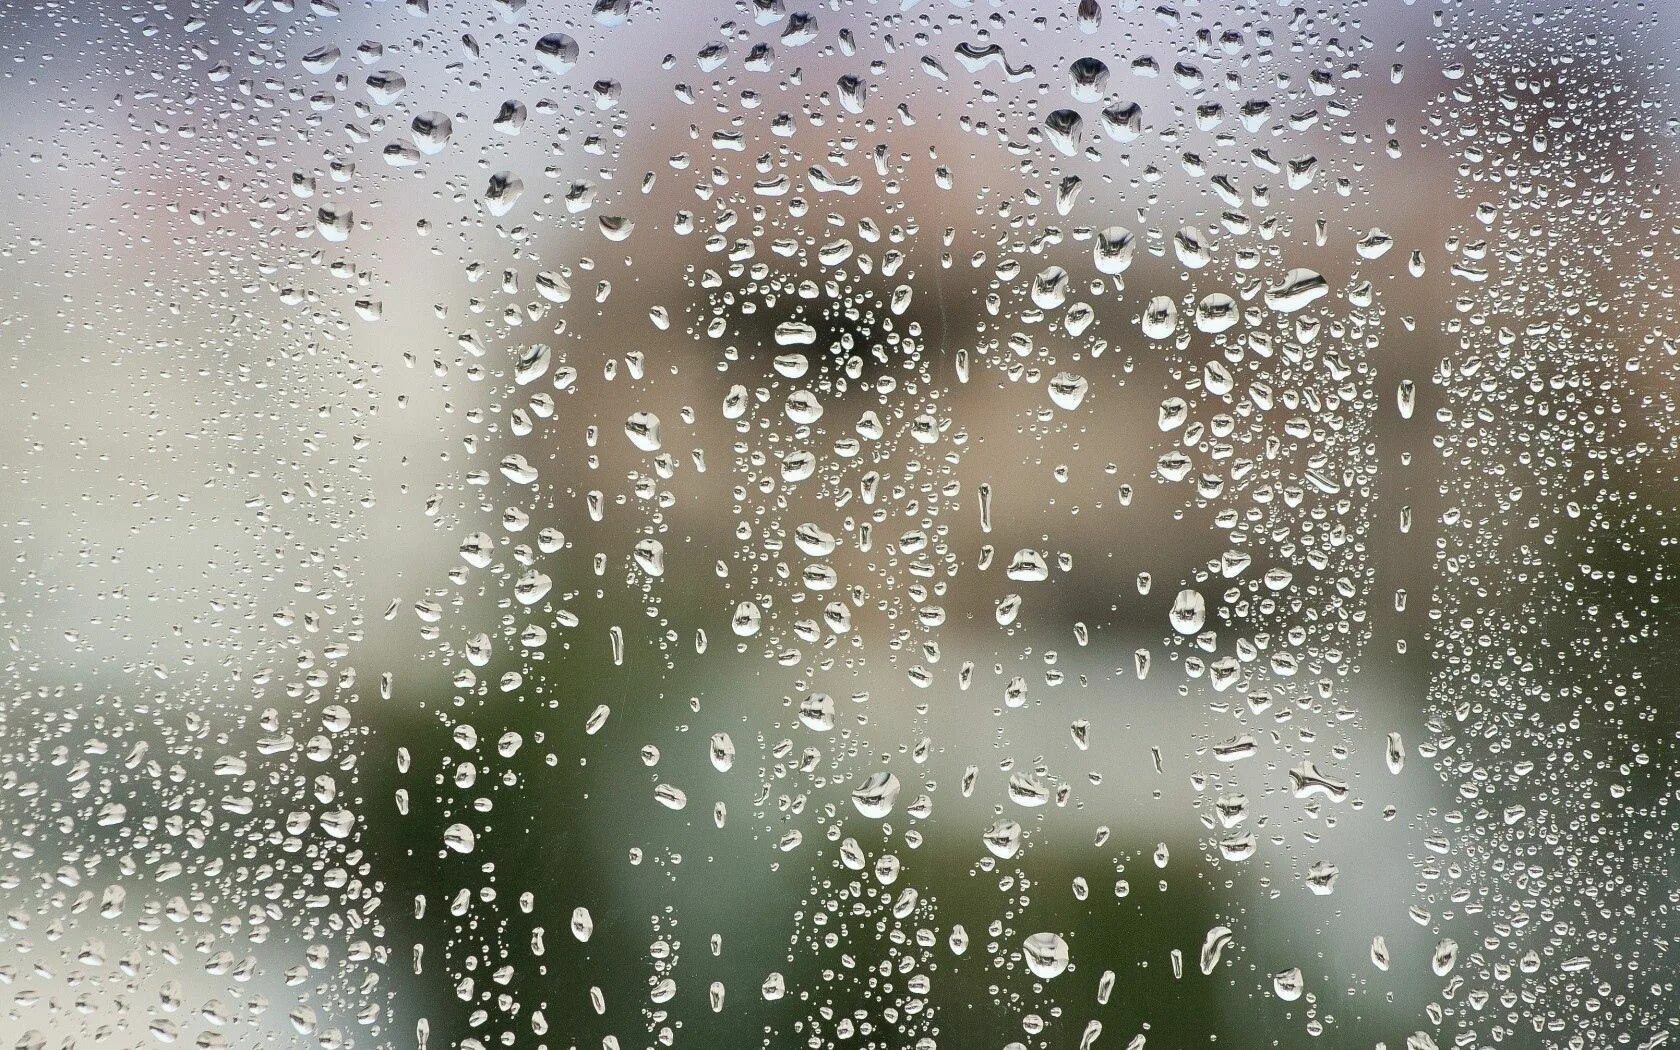 Капли дождя стучат. Капли на стекле. Стекло с эффектом дождя. Запотевшее стекло. Капли дождя.